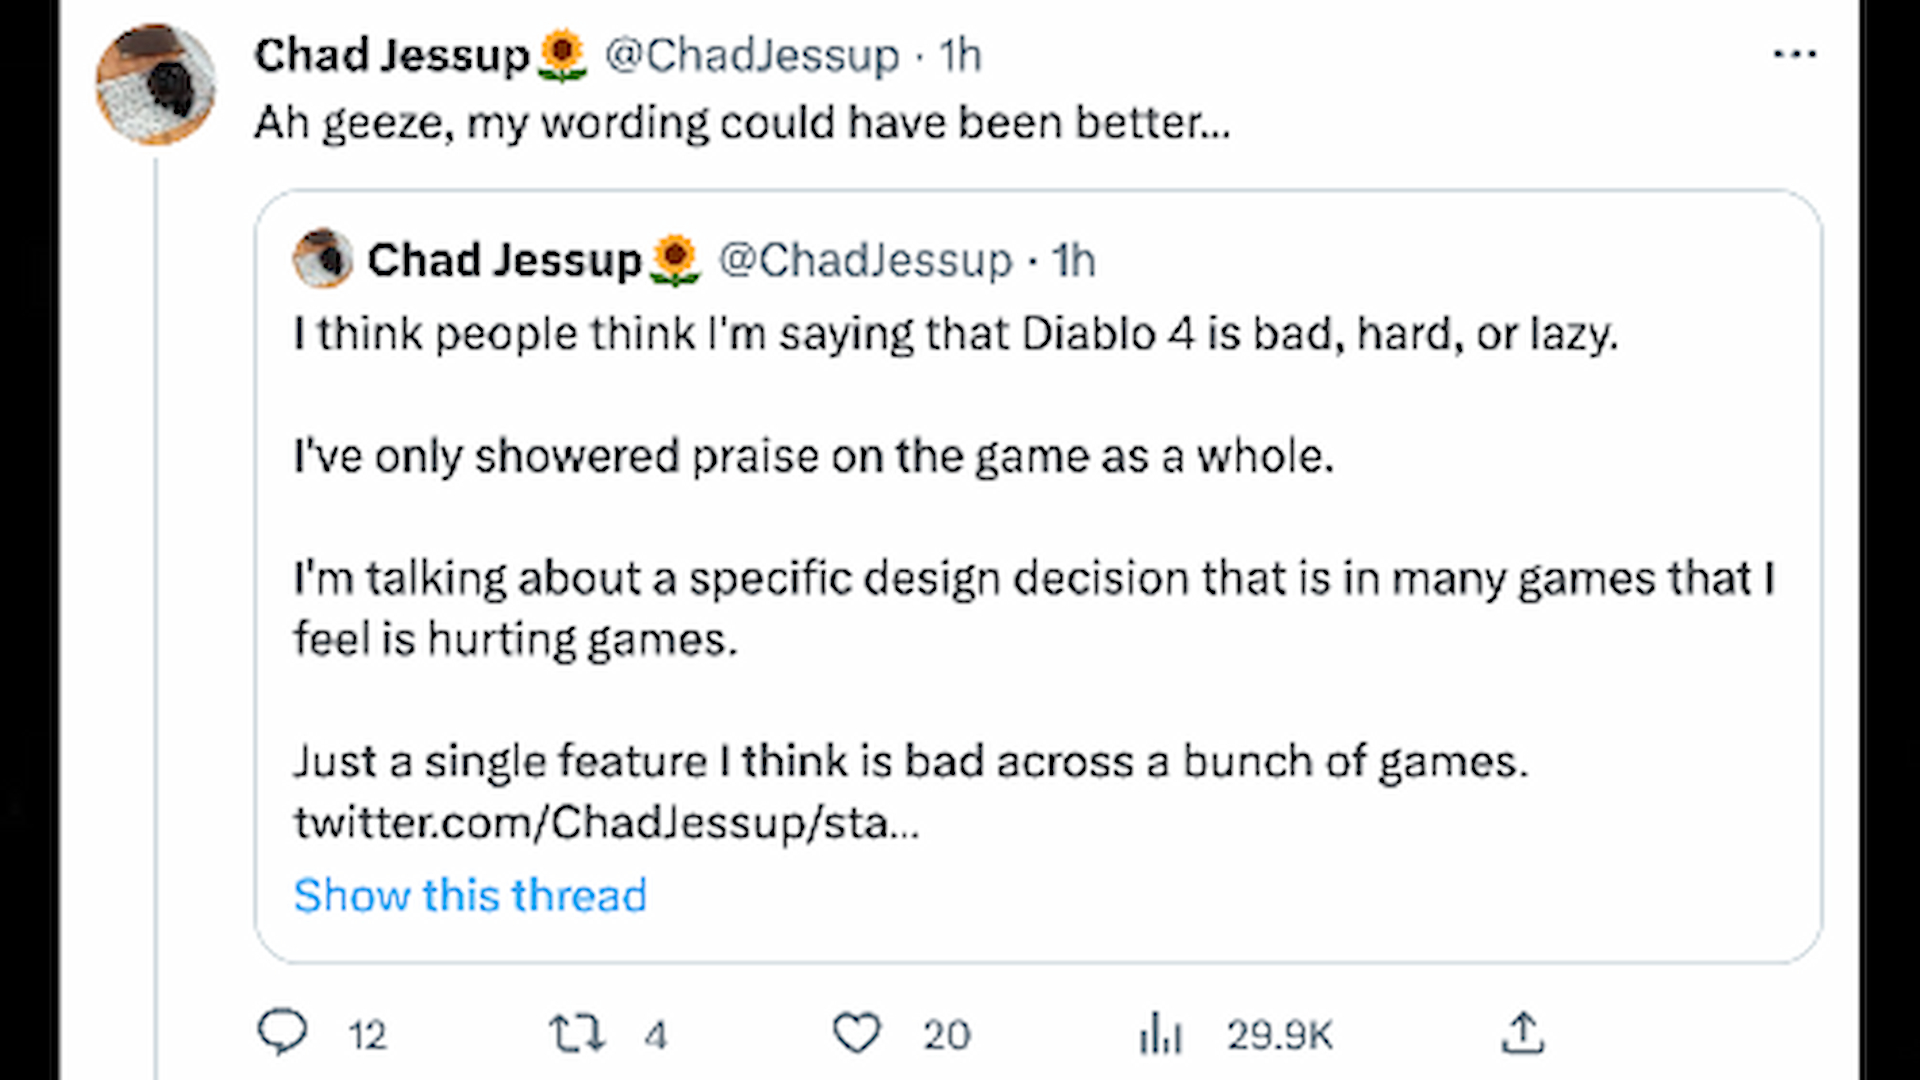 Der Bungie-Entwickler antwortet, nachdem der Diablo-Entwickler auf den ursprünglichen Tweet geantwortet hat